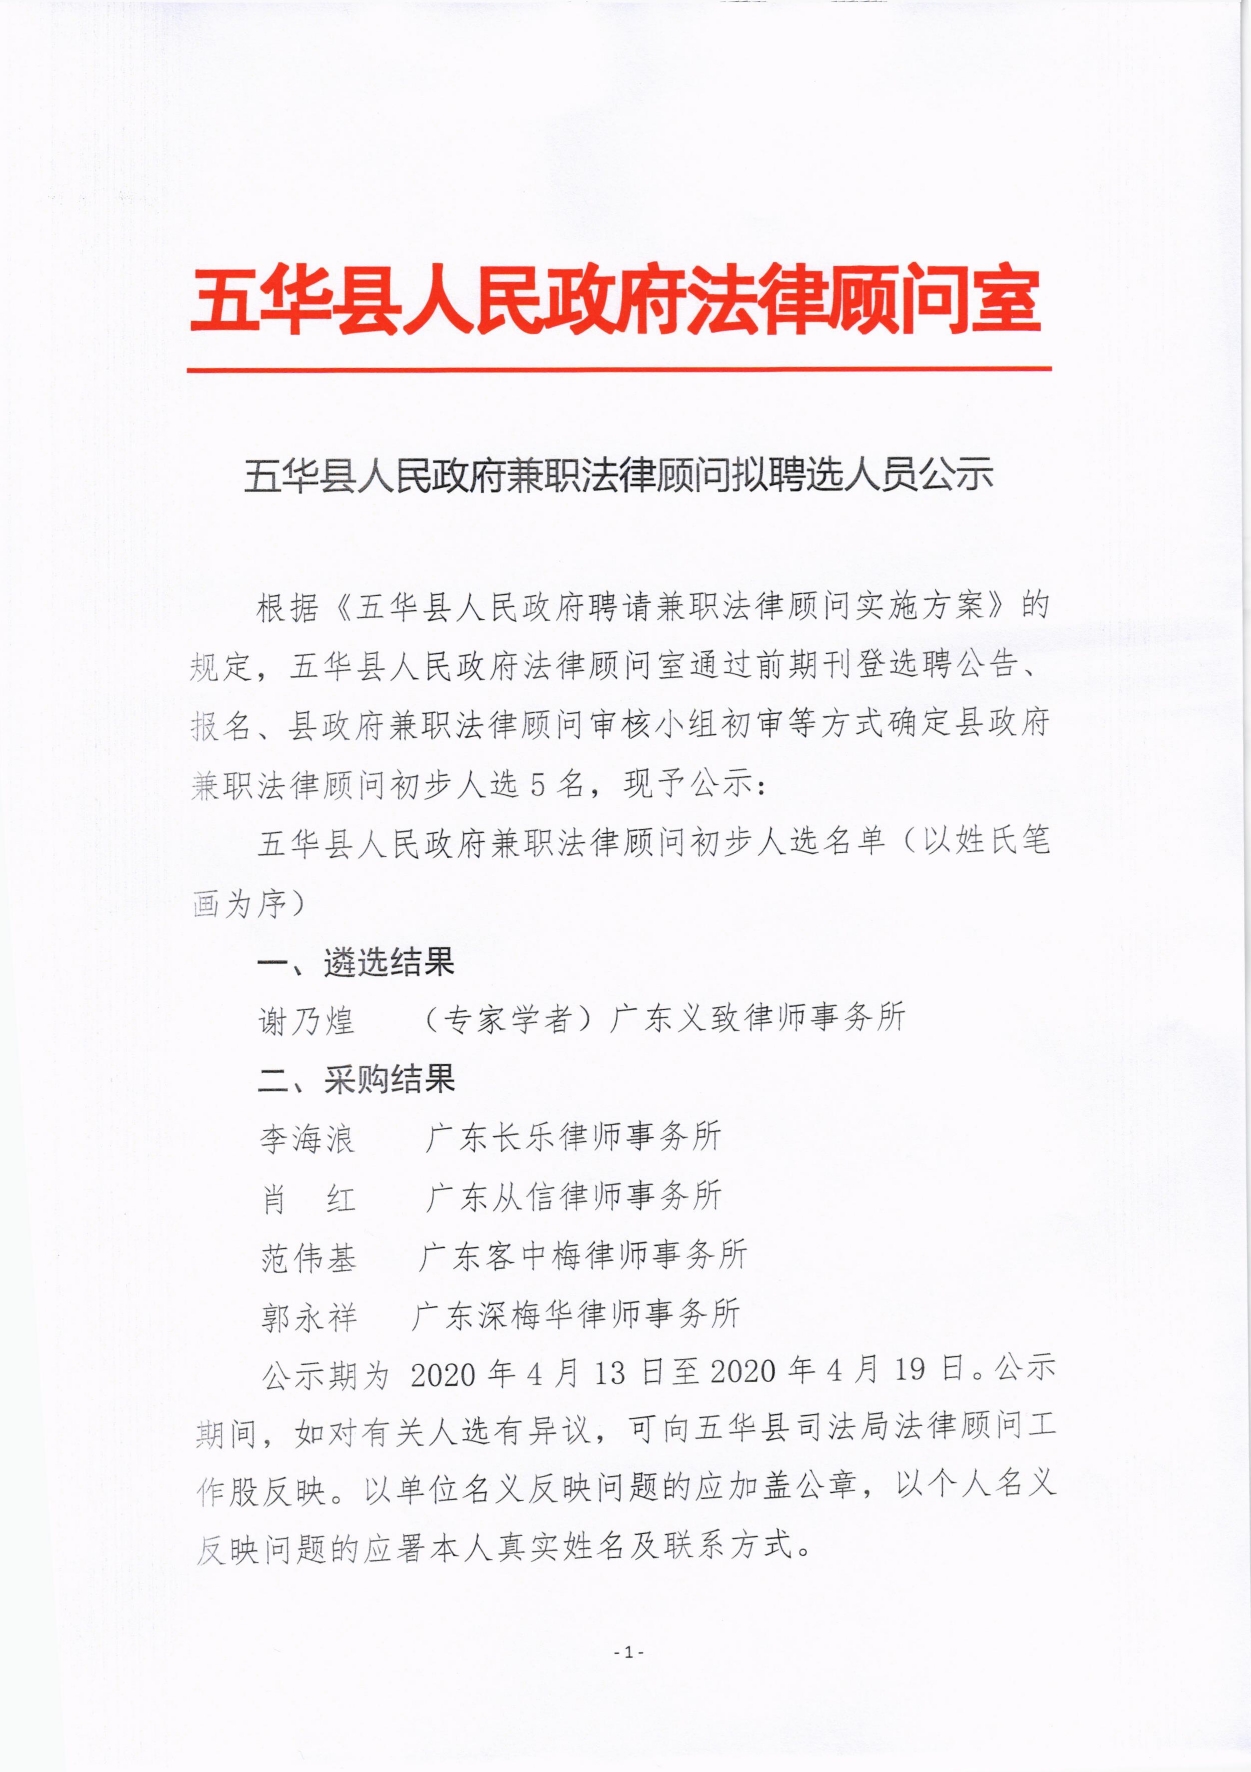 （最新）五华县人民政府兼职法律顾问拟聘选人员公示0000.jpg